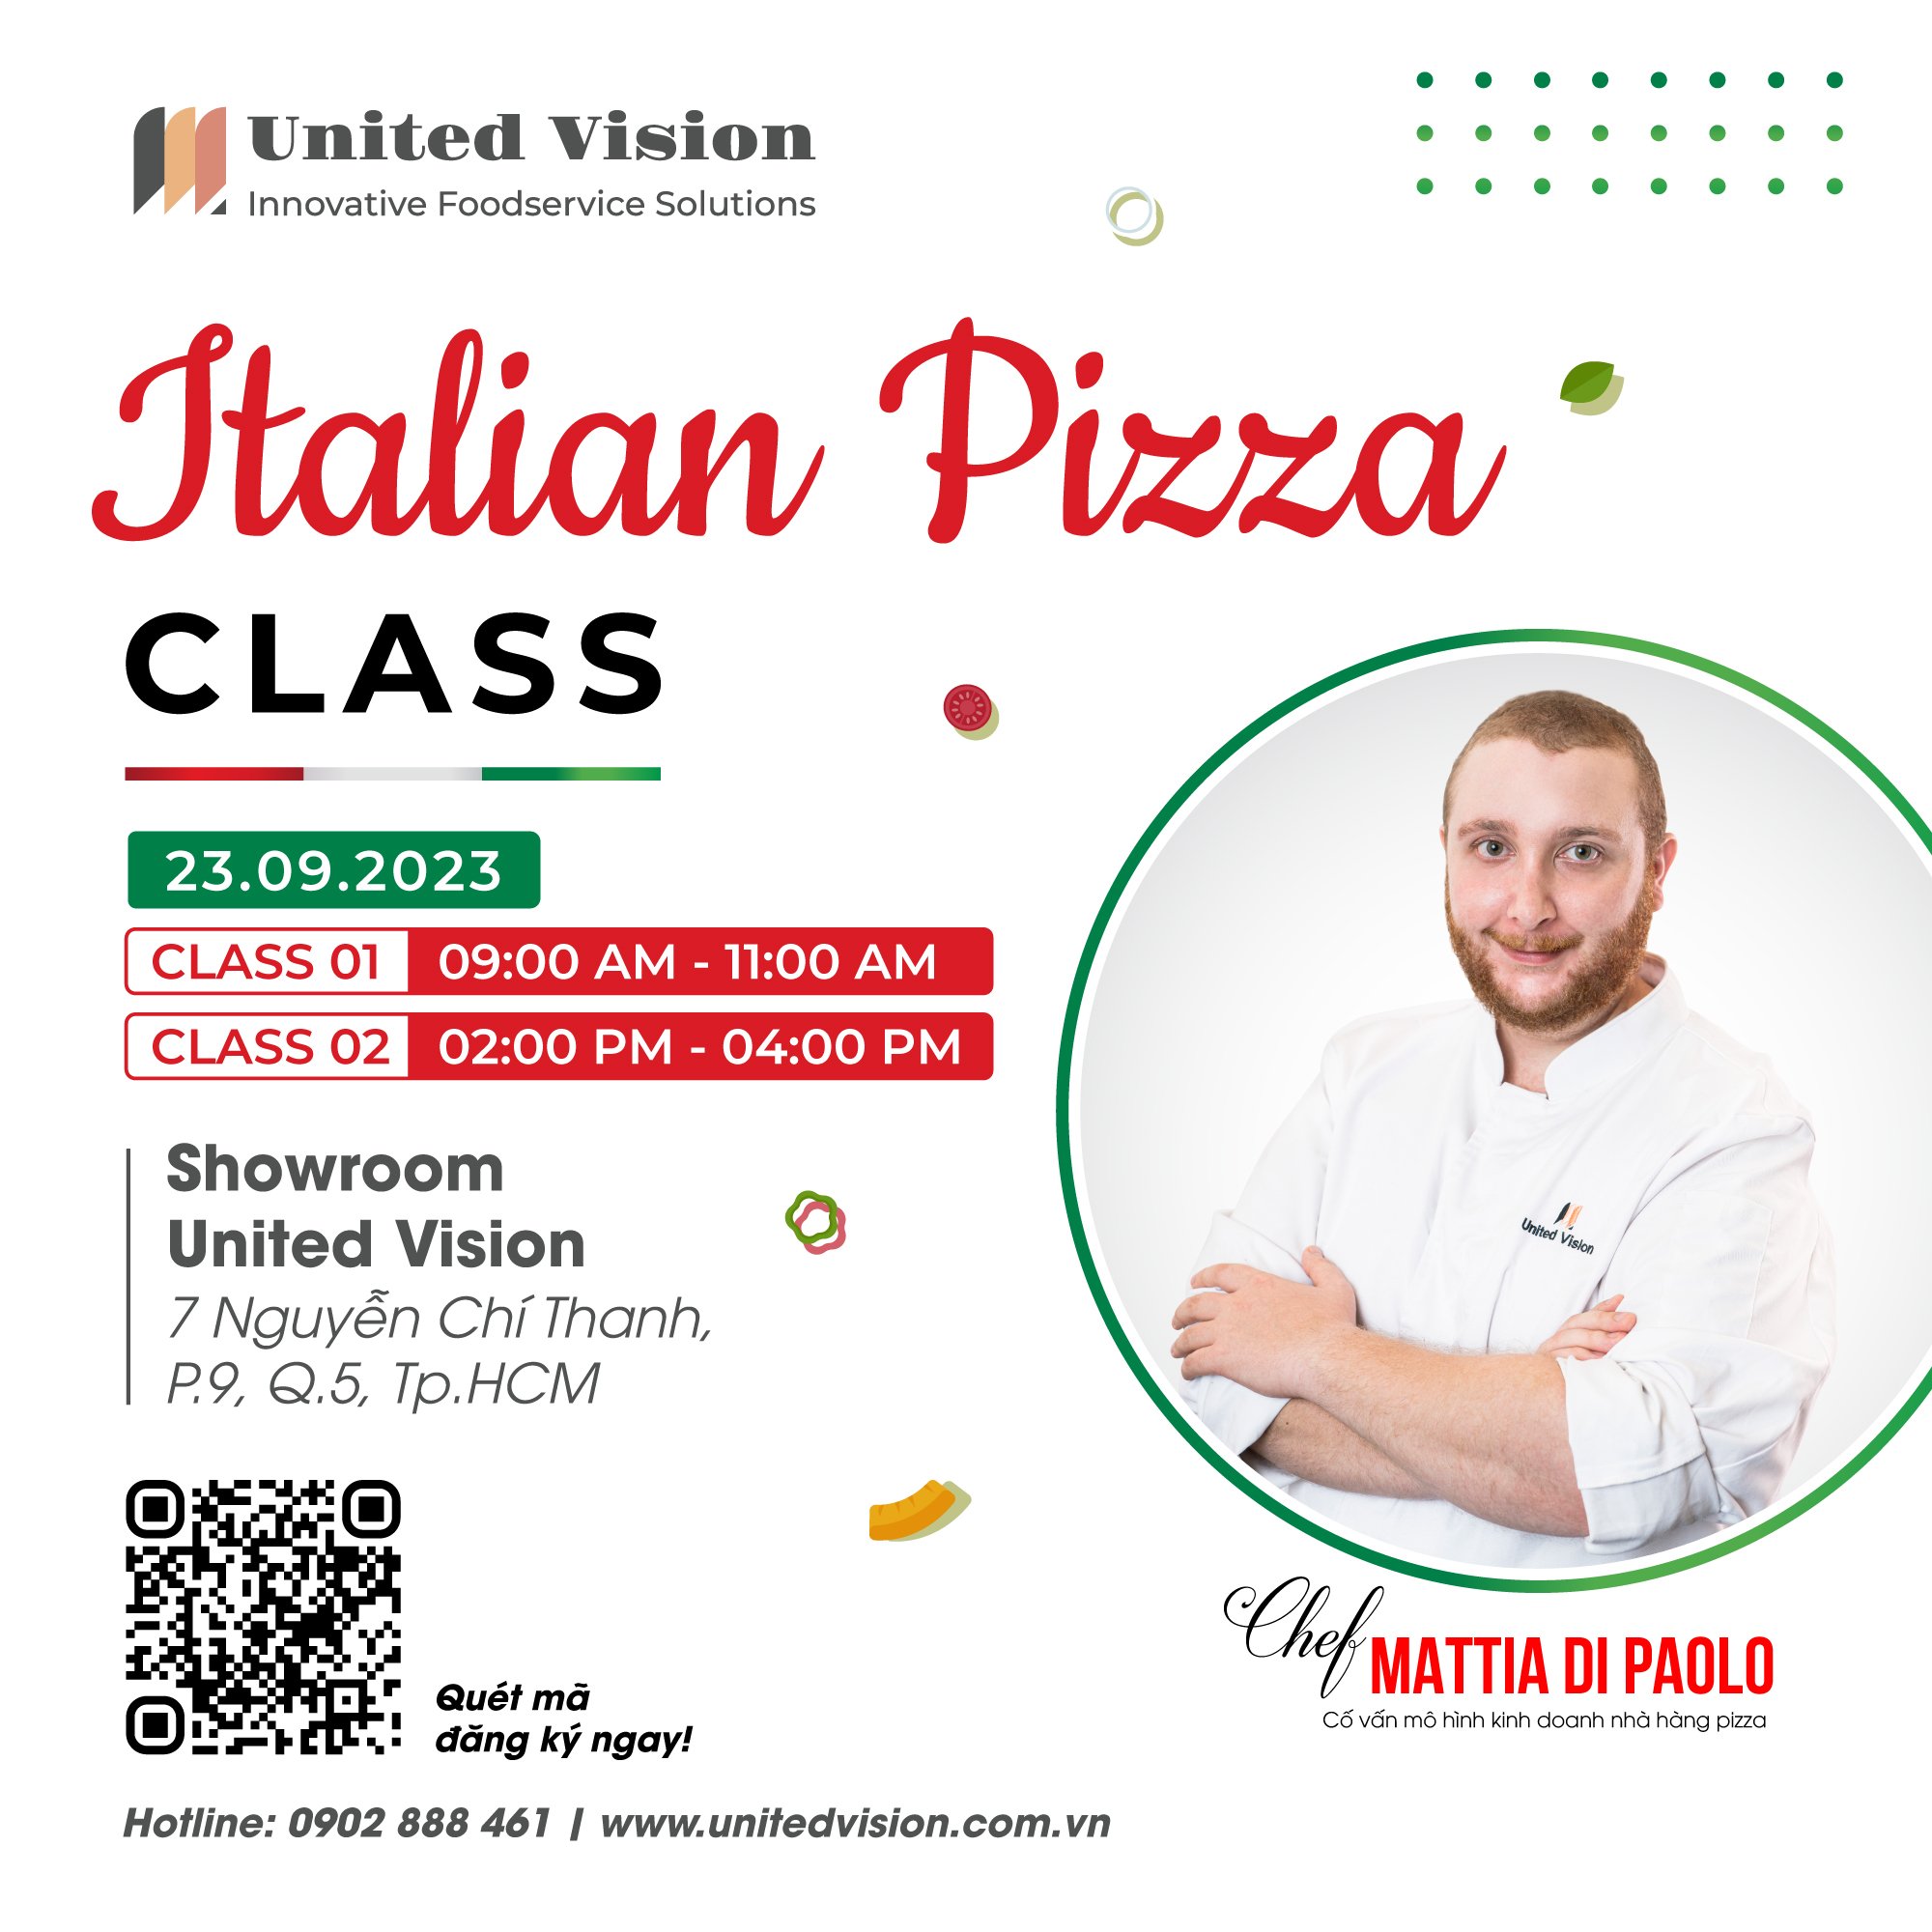 Italian Pizza Class - Lớp học Pizza Ý cùng chef Mattia Di Paolo tại United Vision